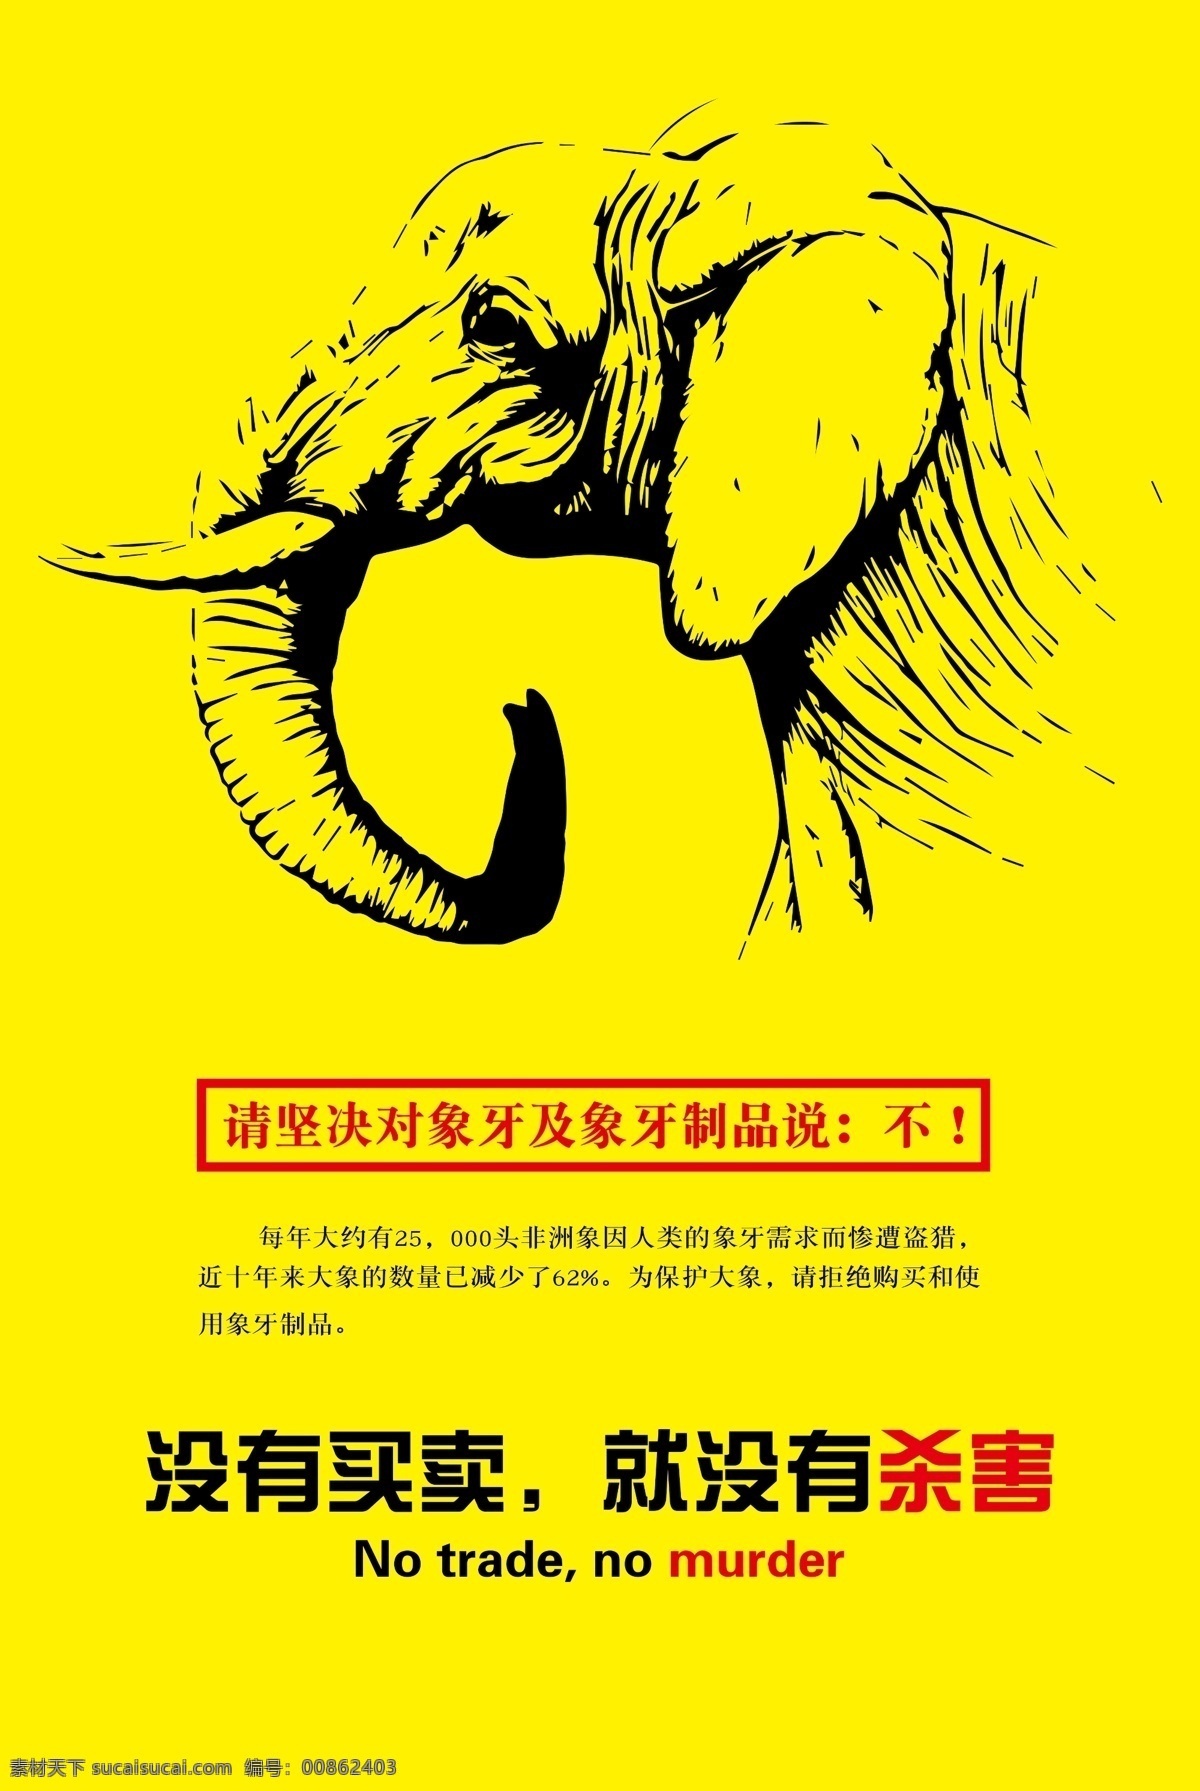 保护 大象 公益 海报 保护大象 公益海报 公益广告 象牙 宣传 创意 动物 买卖 杀戮 野生 黄色